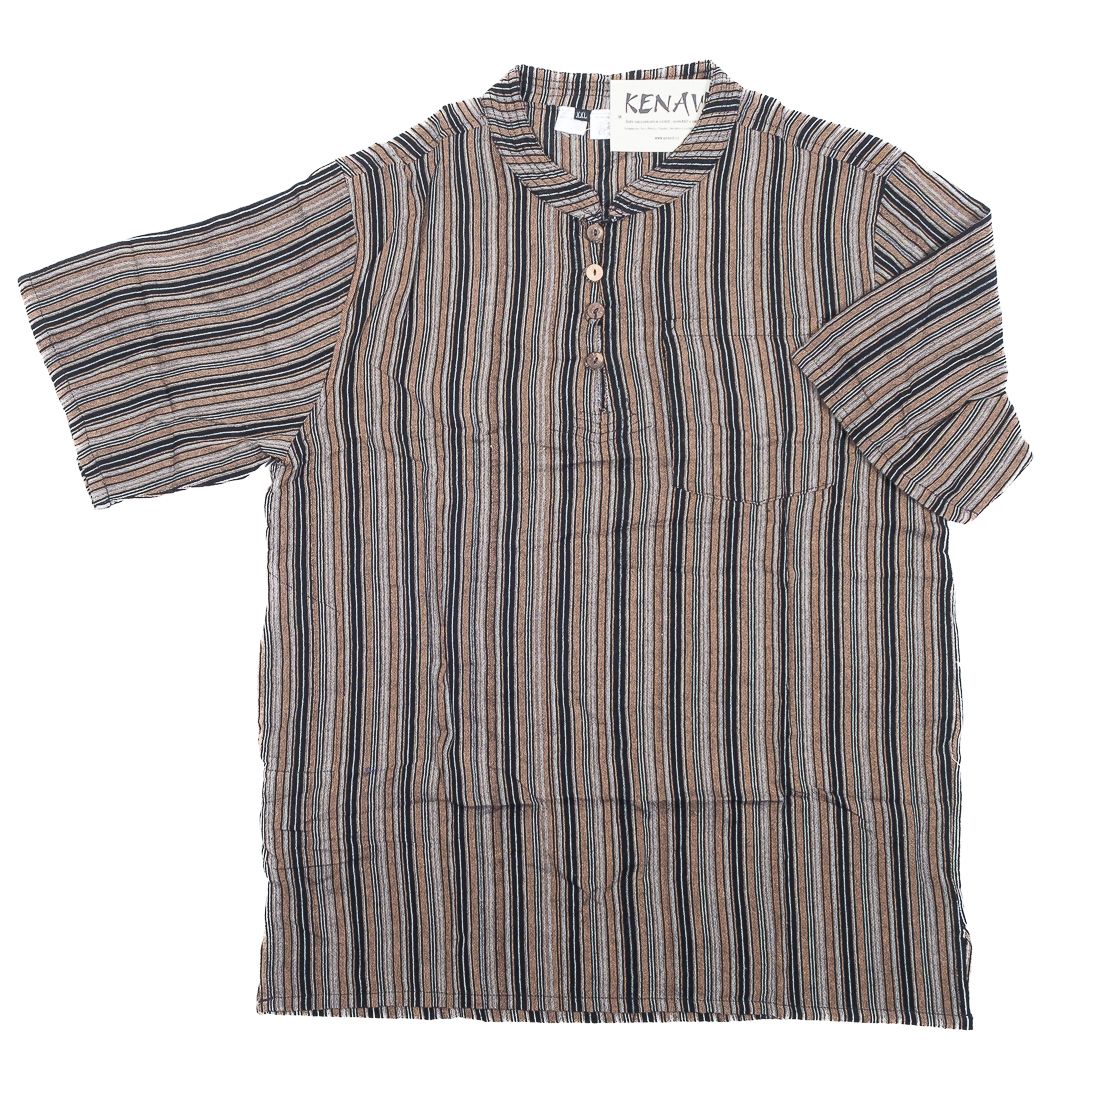 Pánská košile s krátkým rukávem NT0009-02-023 KENAVI